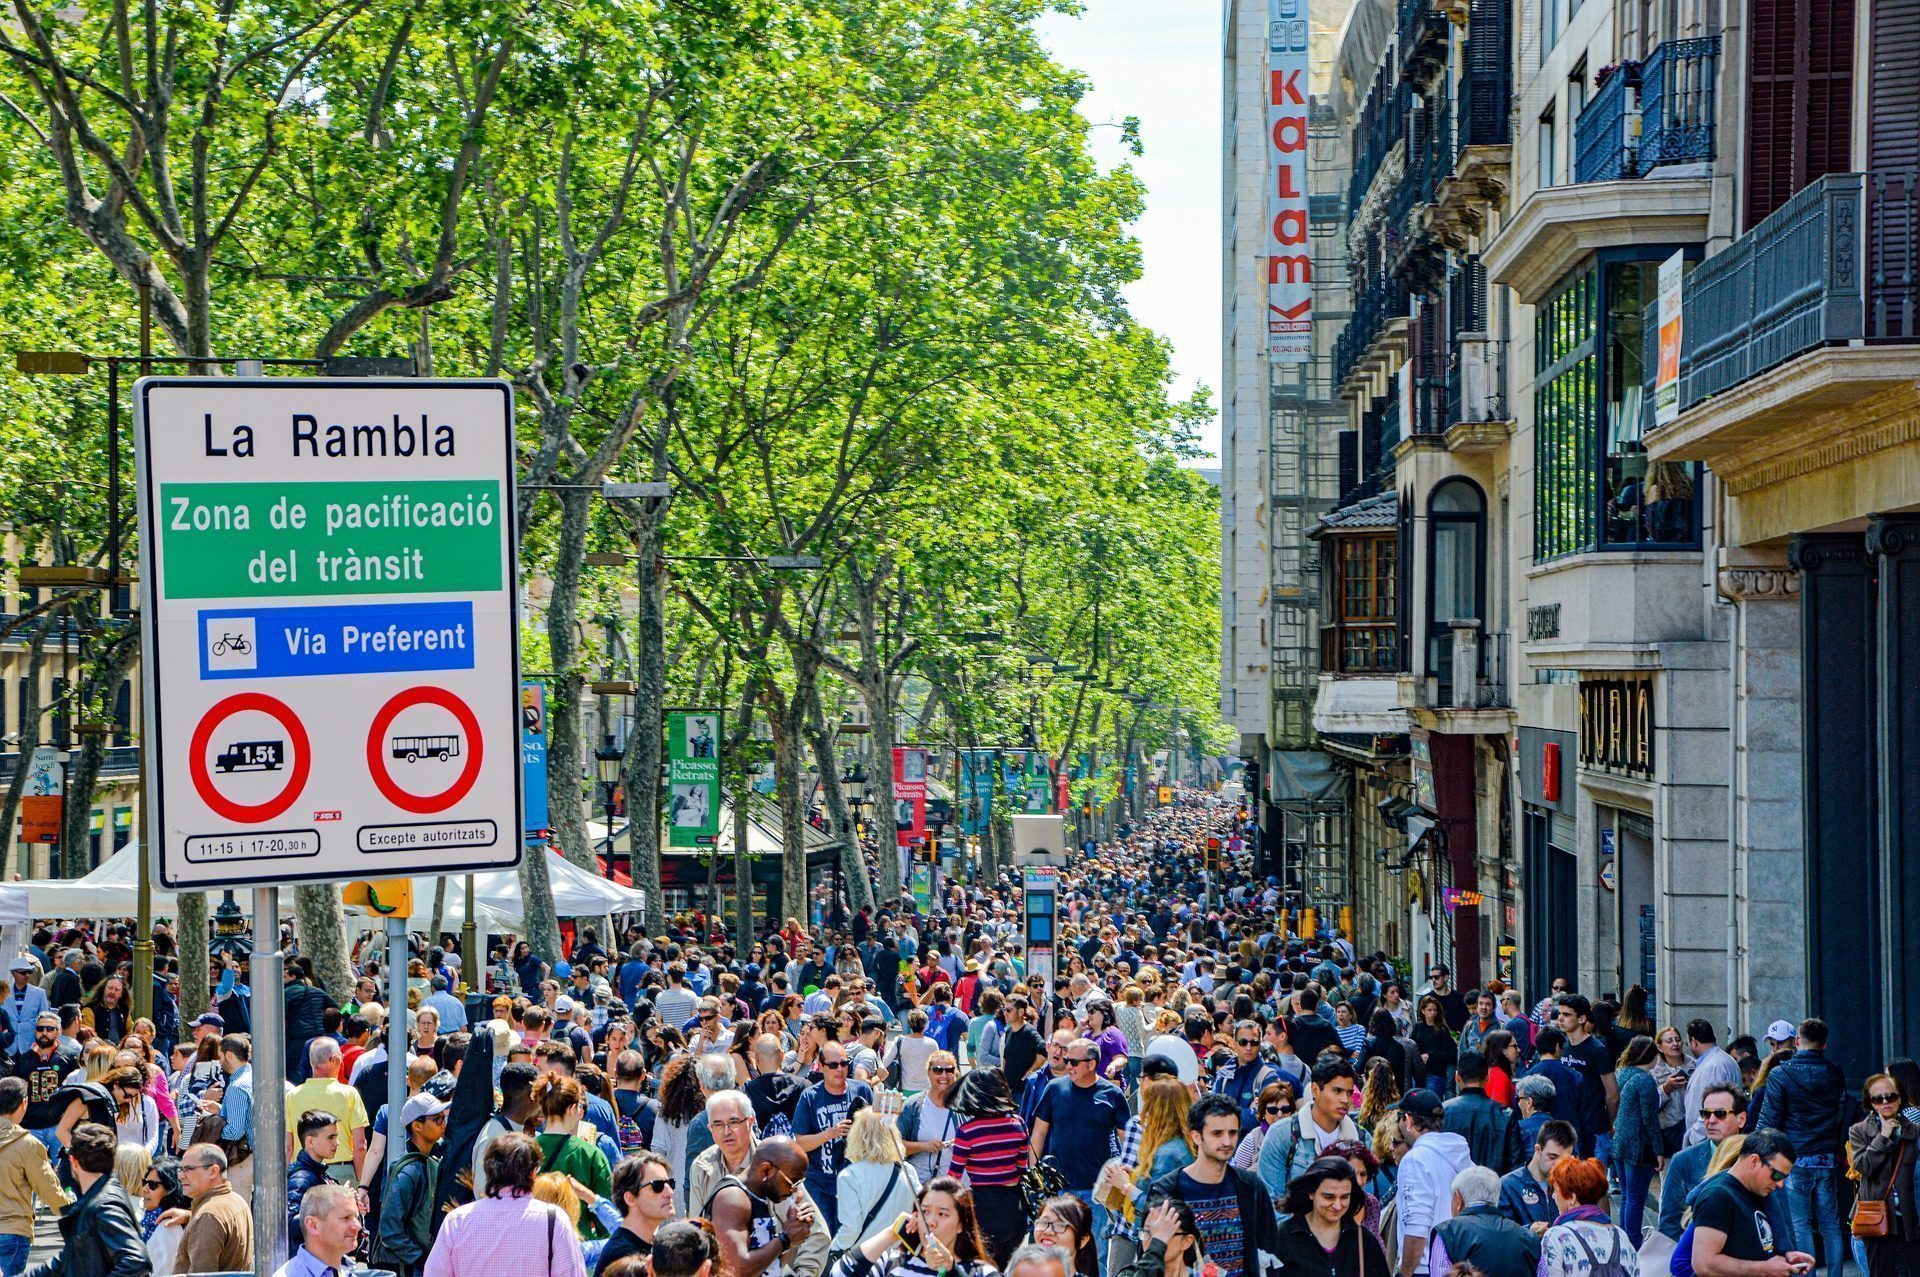 Tłum turystów na ulicy La Rambla w Barcelonie. Zdjęcie: Nikolaus Bader: https://pixabay.com/images/id-4919890/